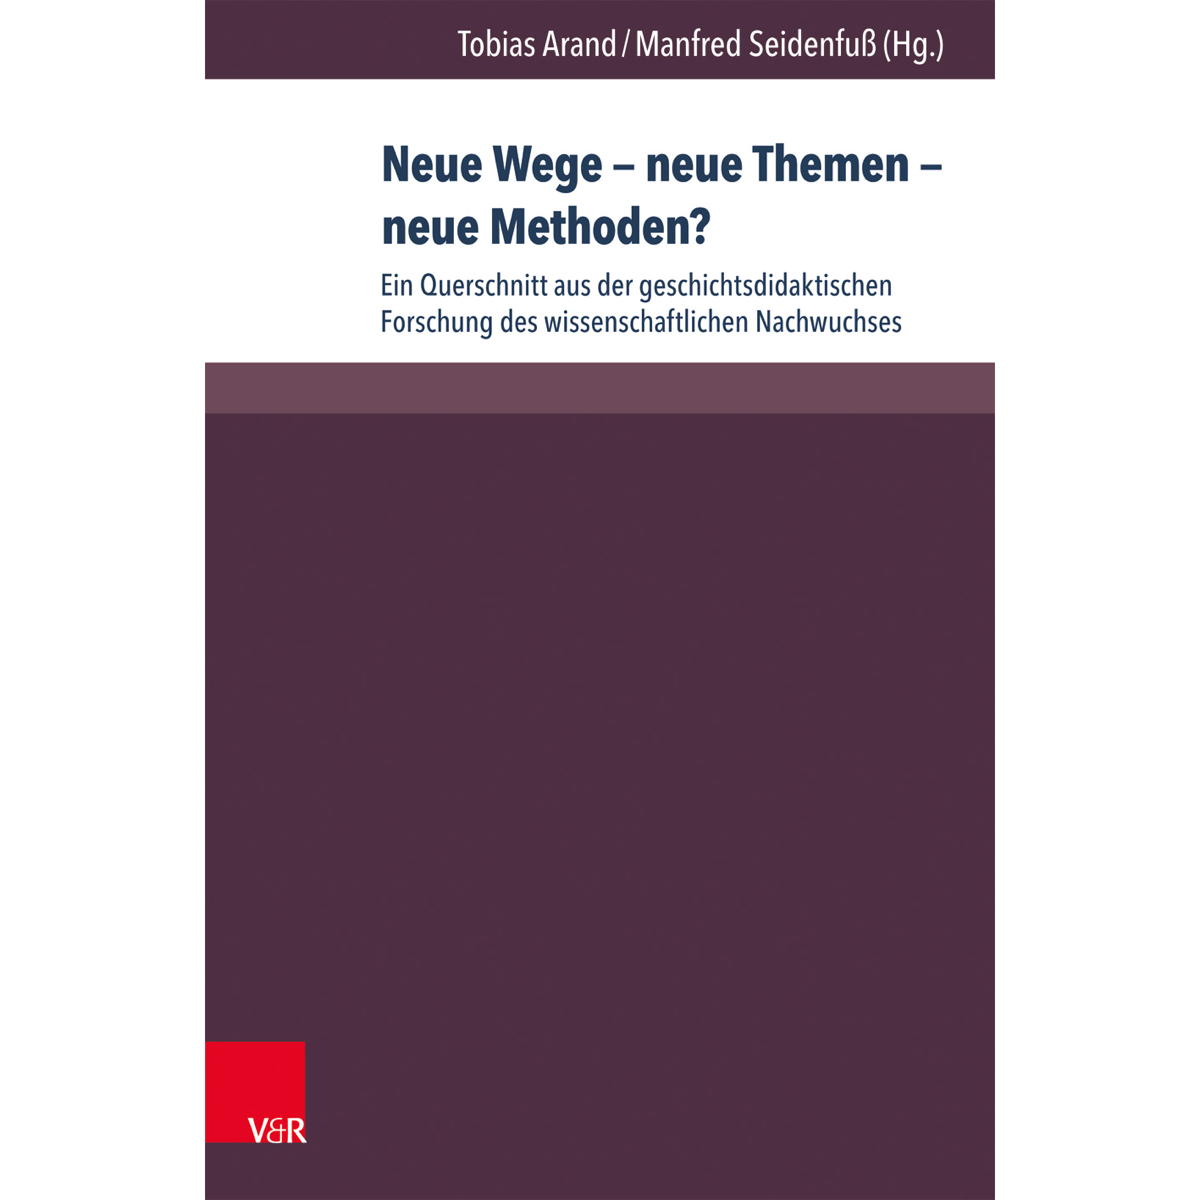 Neue Wege - neue Themen - neue Methoden? von V & R Unipress GmbH